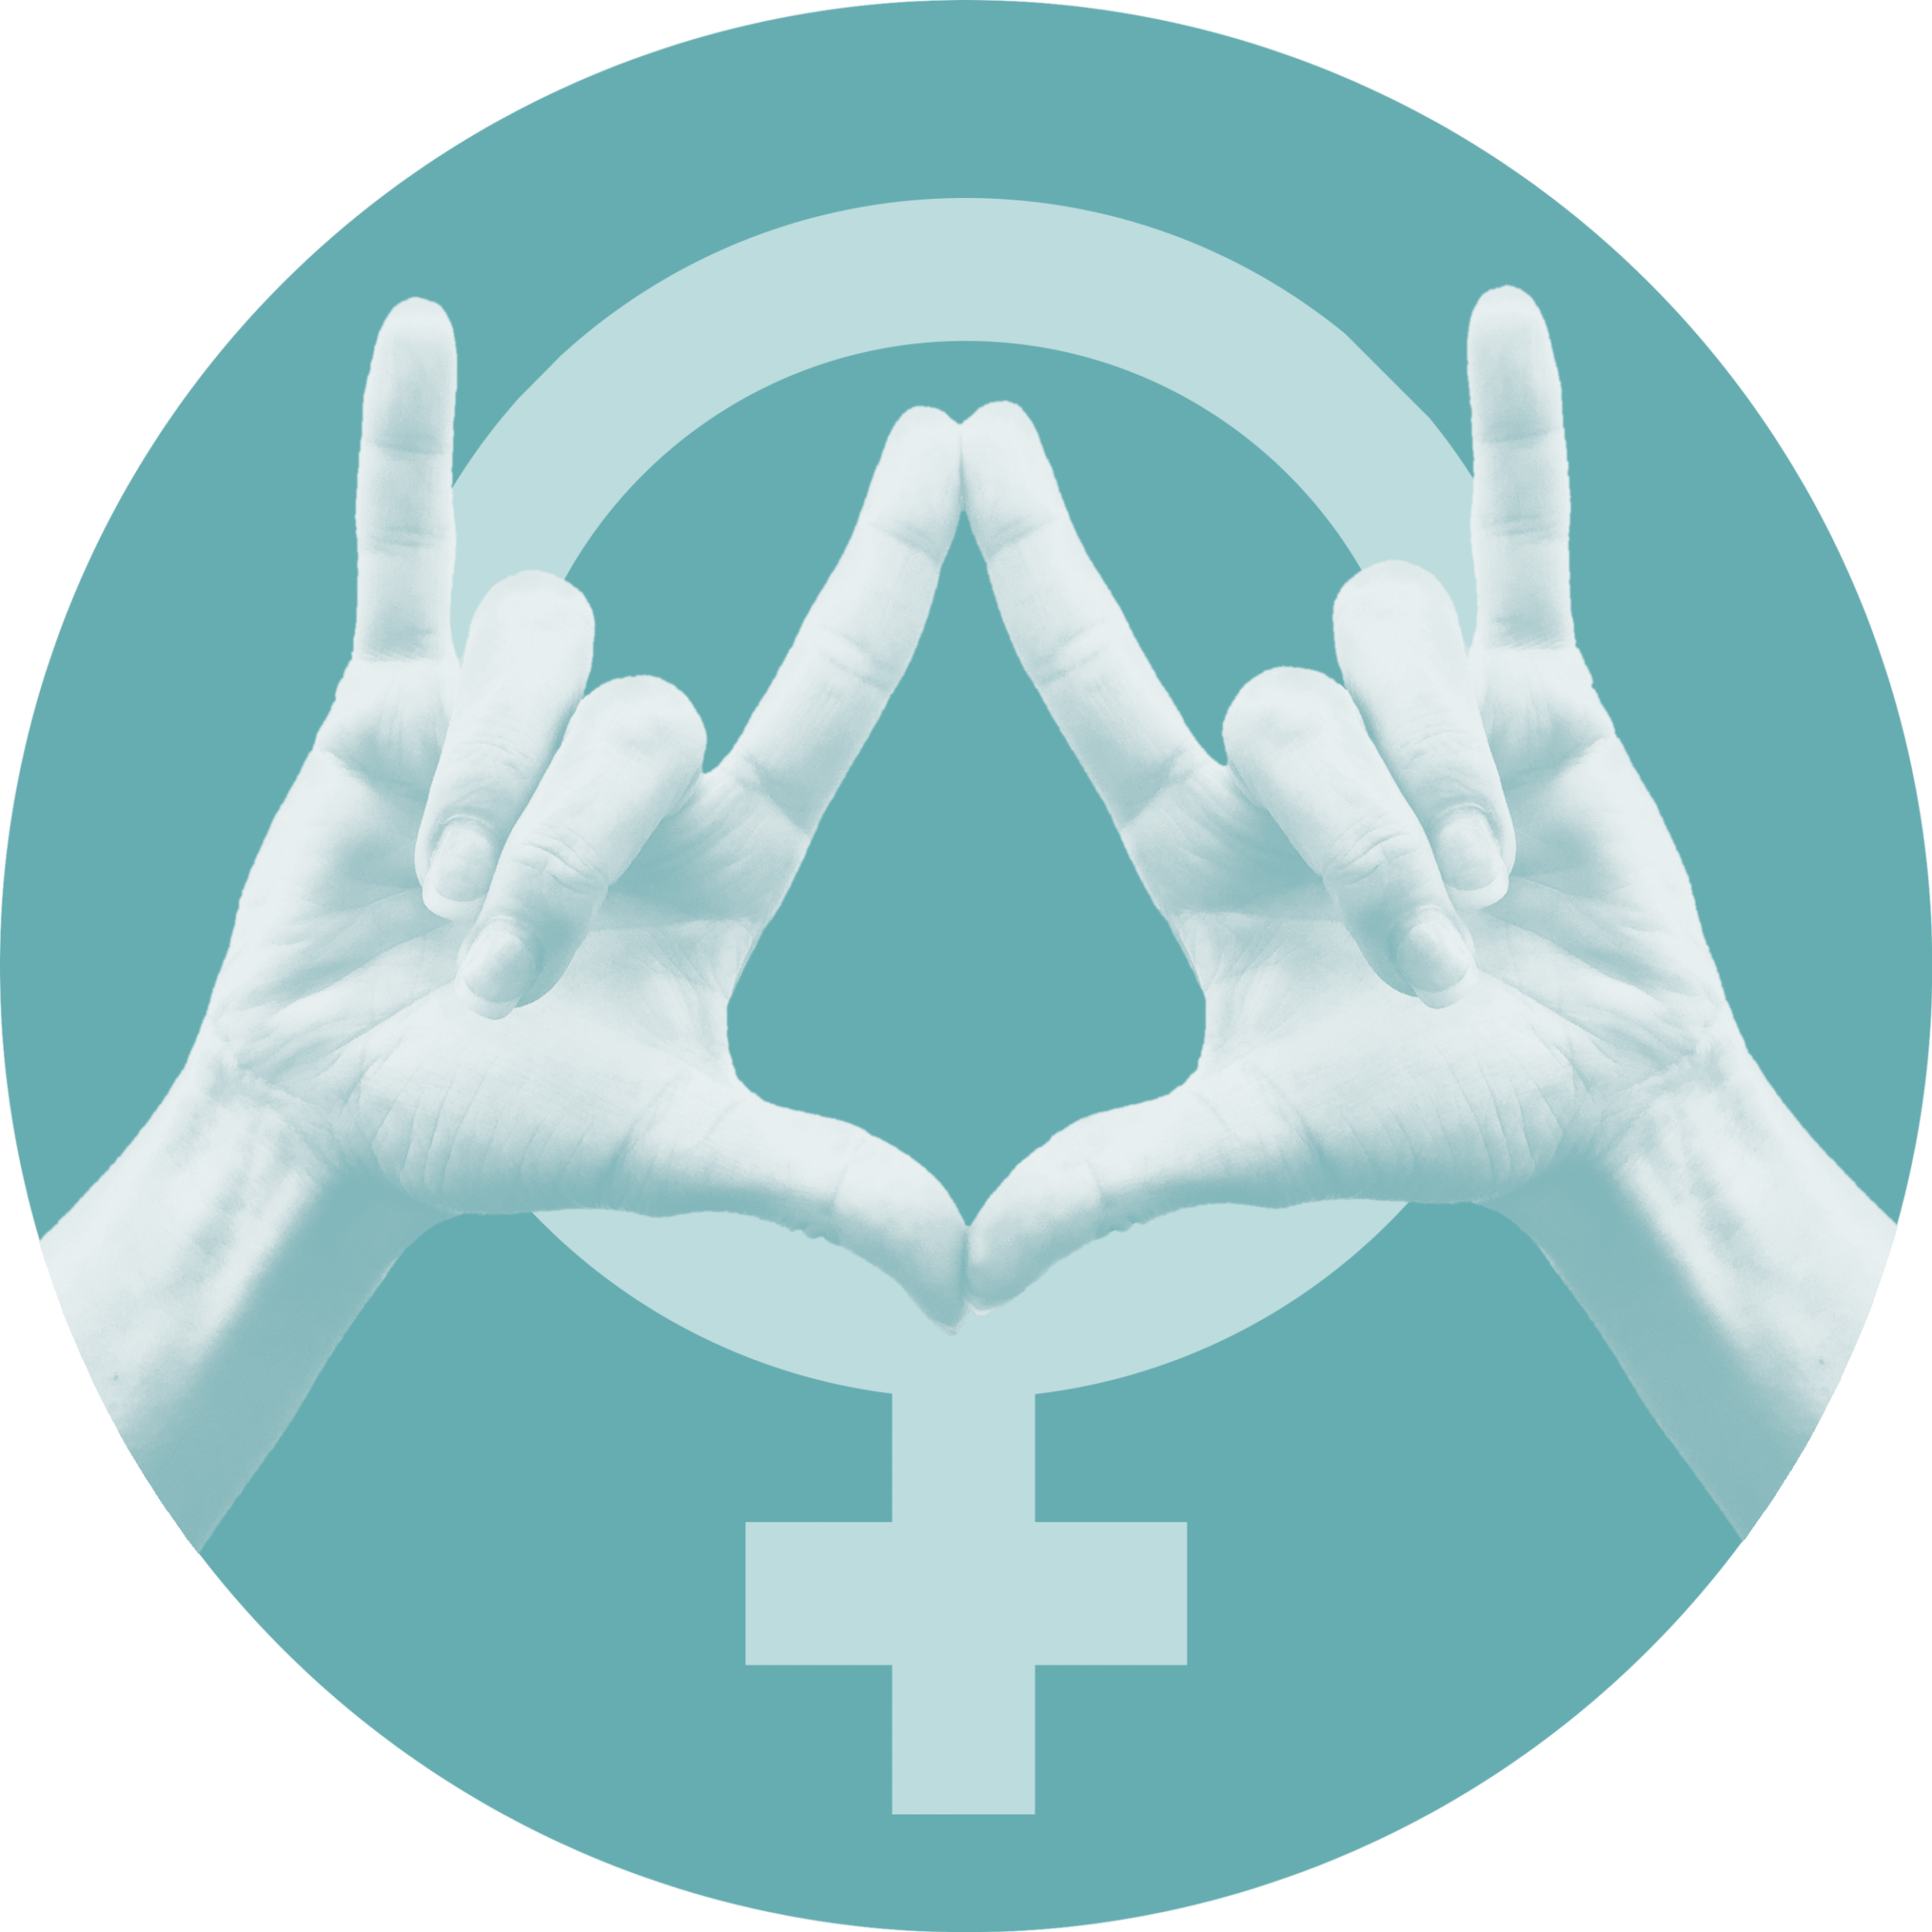 Venussymbol auf türkisem Hintergrund, davor zwei Hände, welche die Gebärde "I Love Vagina" bilden